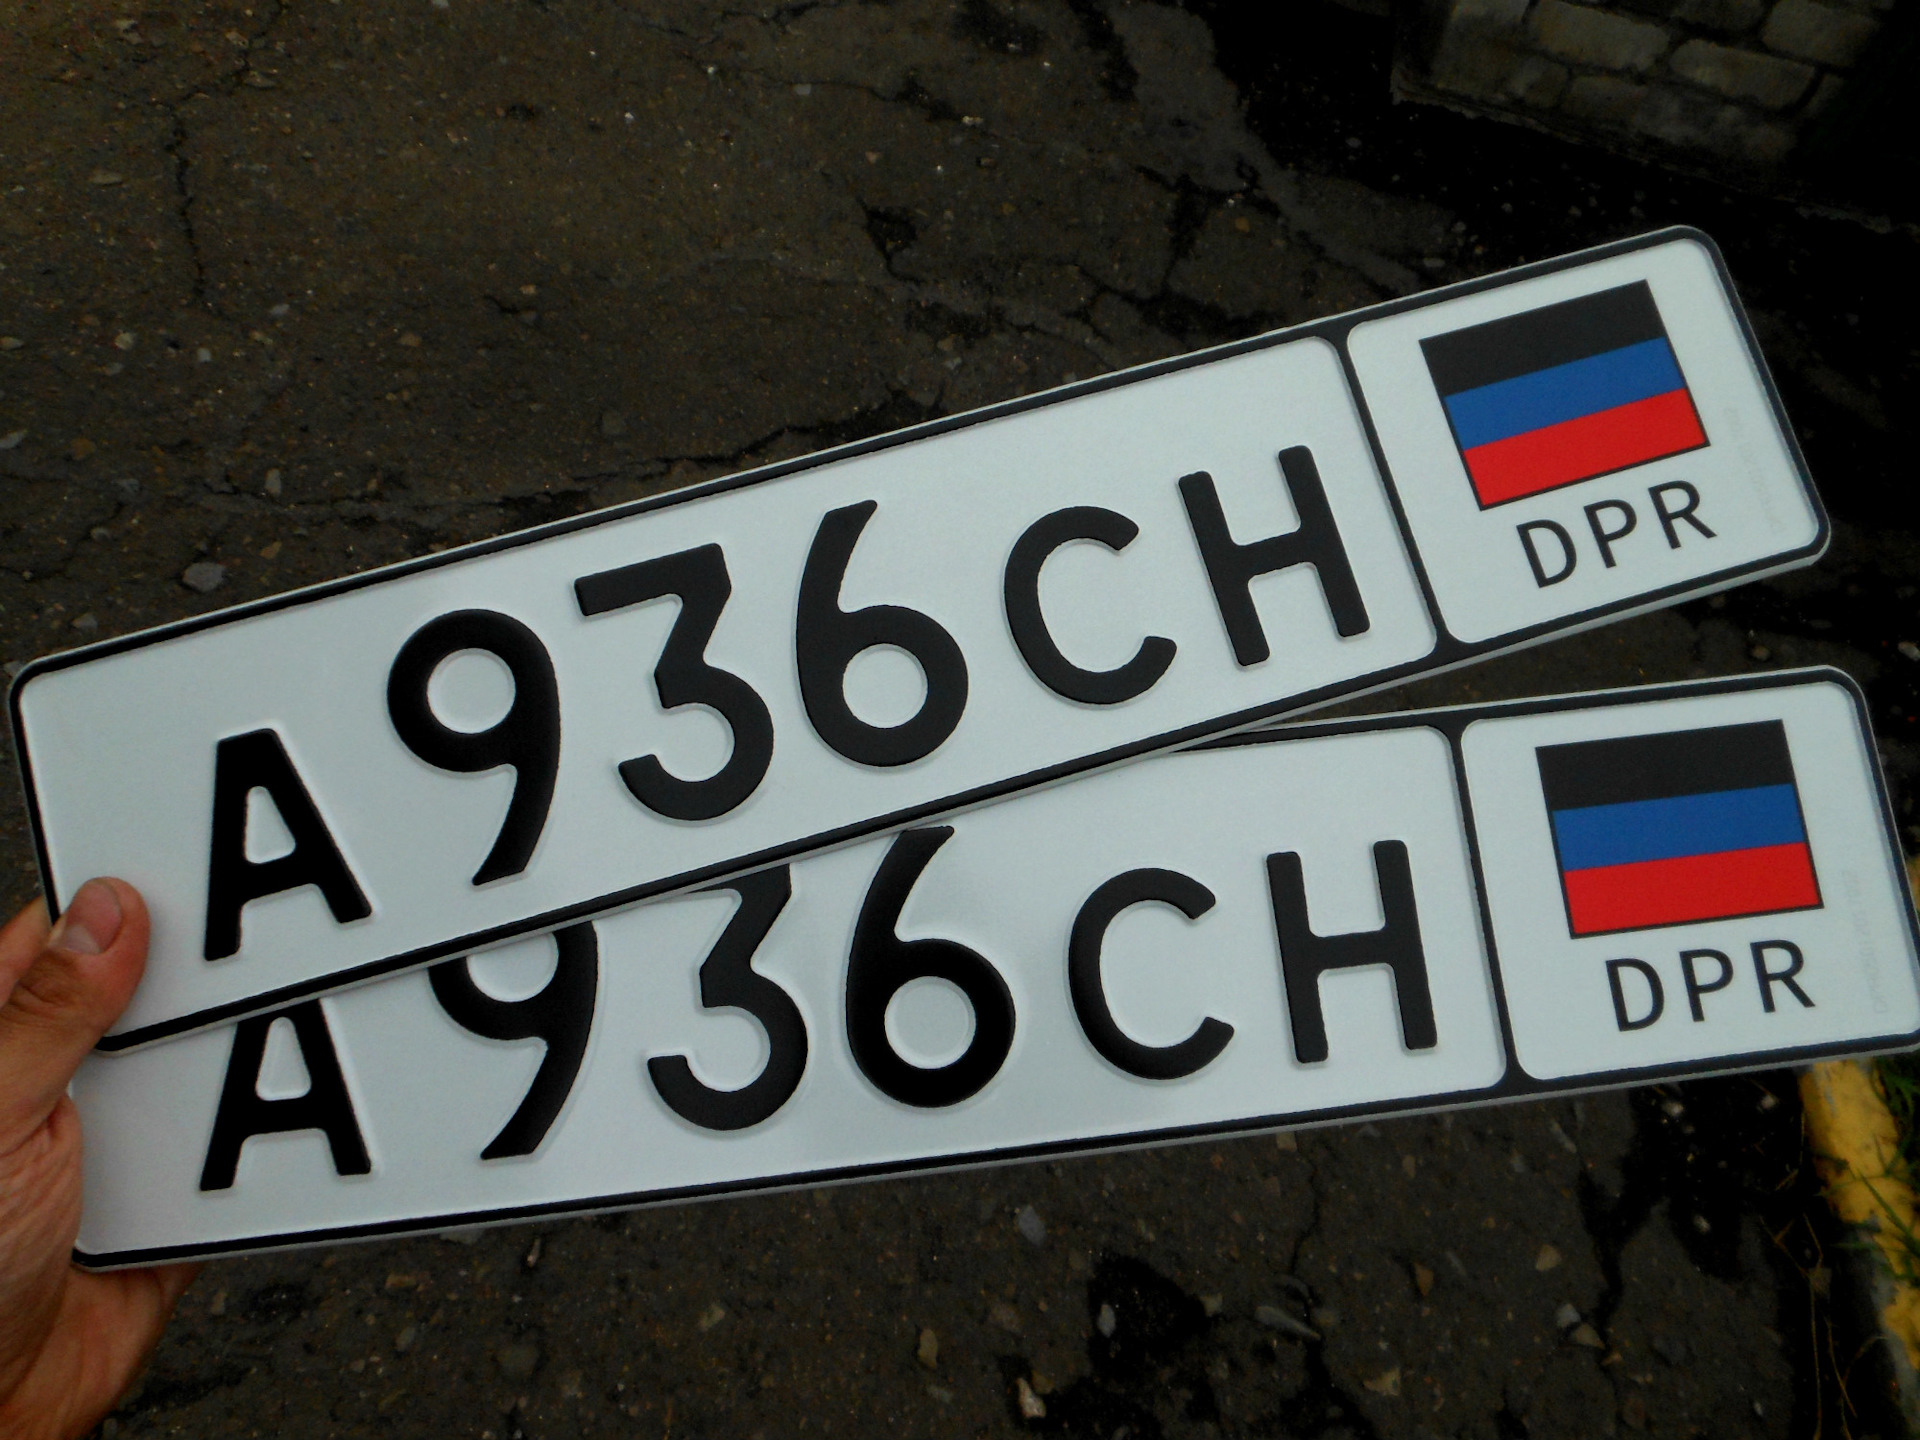 Европейские номера в россии. Украинские гос номера. Украинские номера автомобилей. Украинские но ера машин. Украинские номерные знаки.